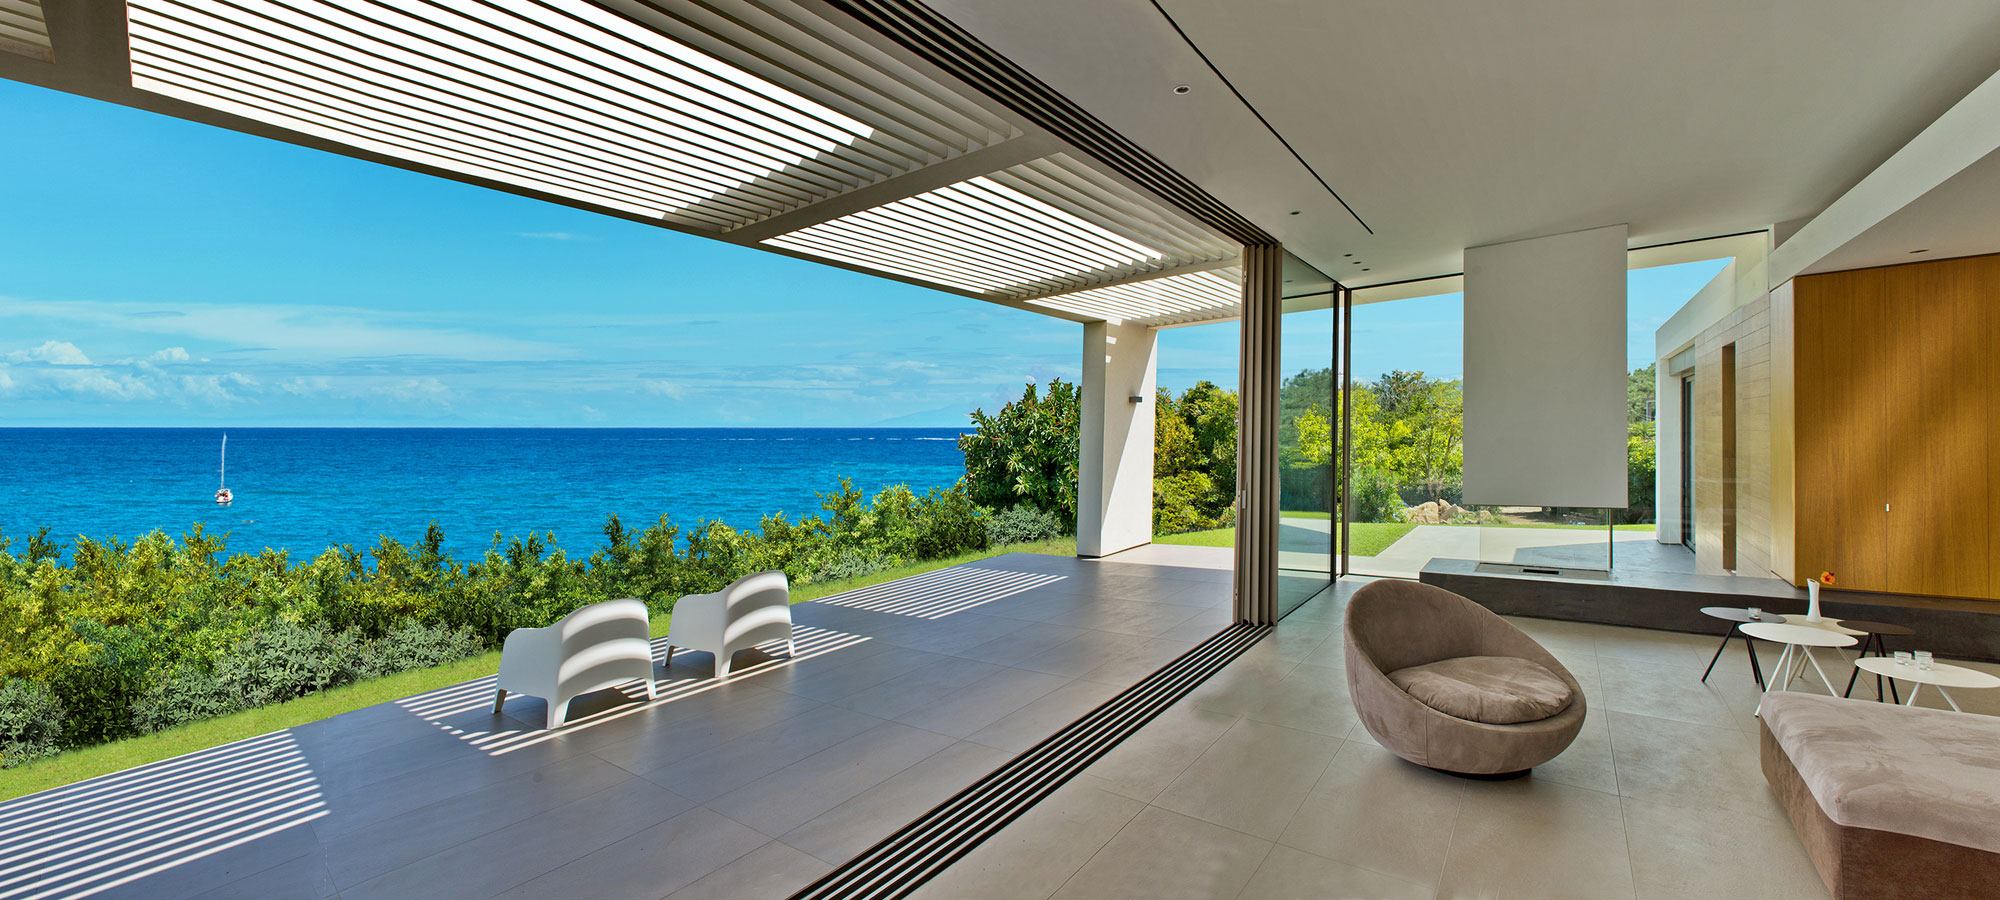 Lombok Architekt - Moderne Mediterrane Villa mit Meerblick Bild 7